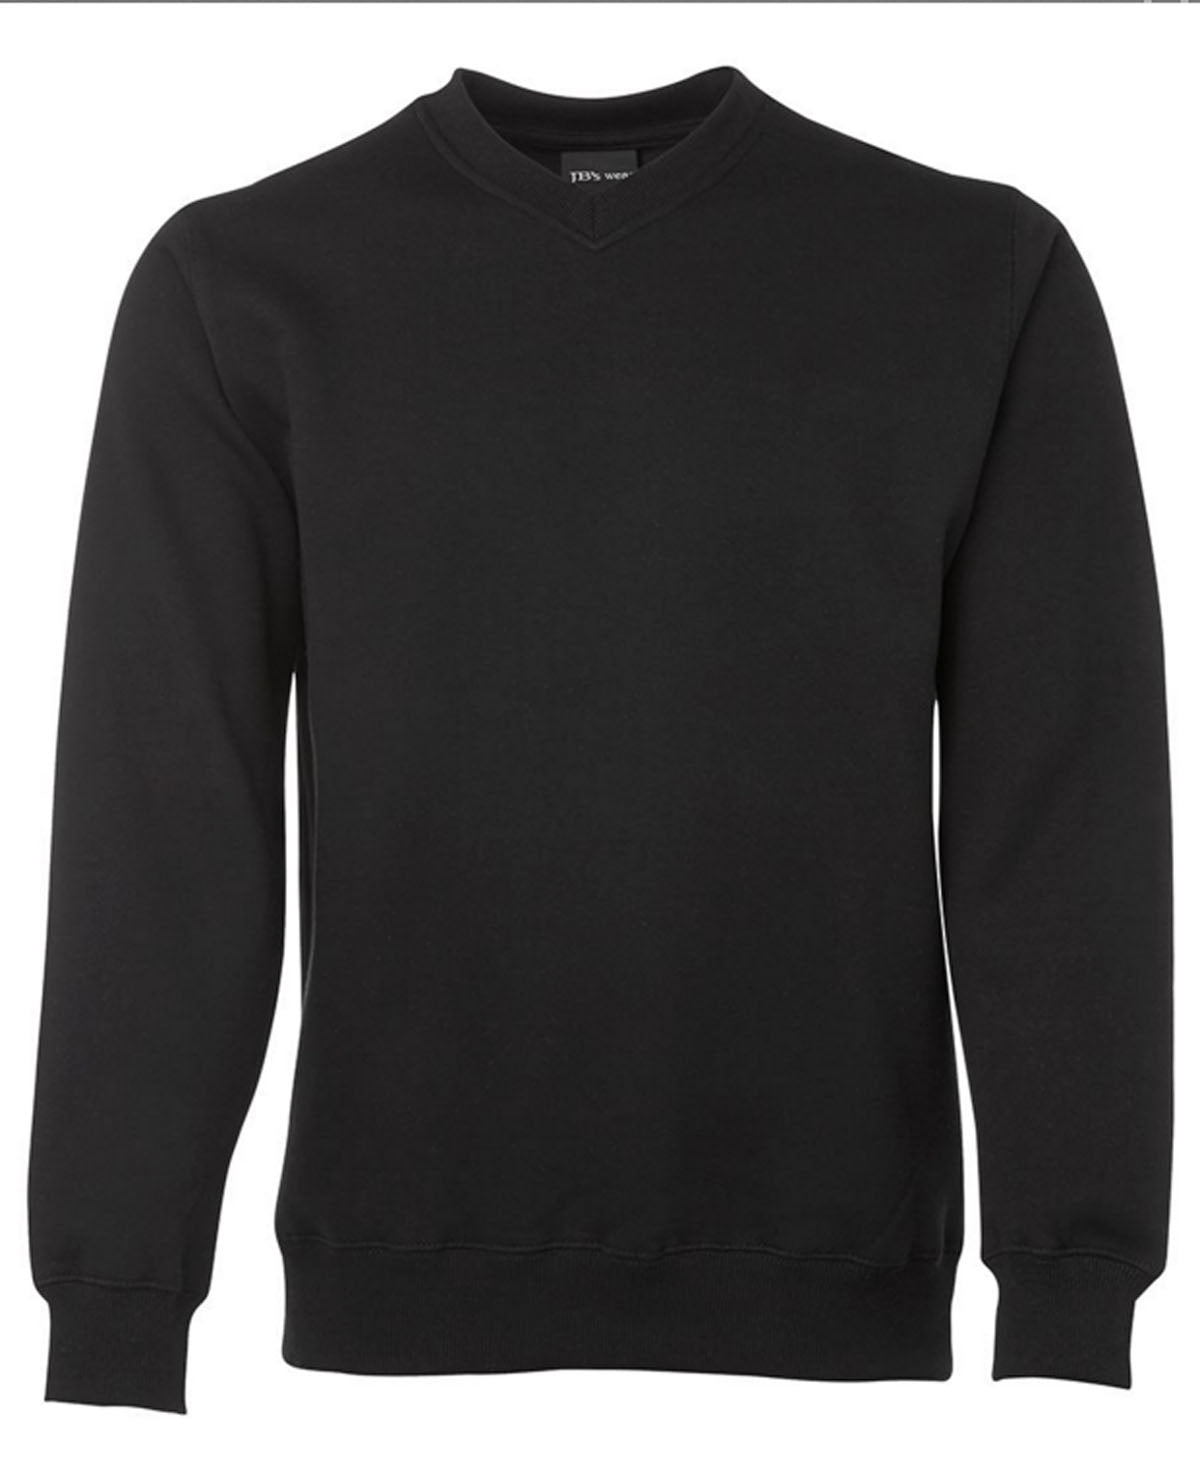 JBs Fleecy Sweater V Neck - BLACK NAVY GREY S Black Menswear Mature Stock Service by JBs Wear | The Bloke Shop